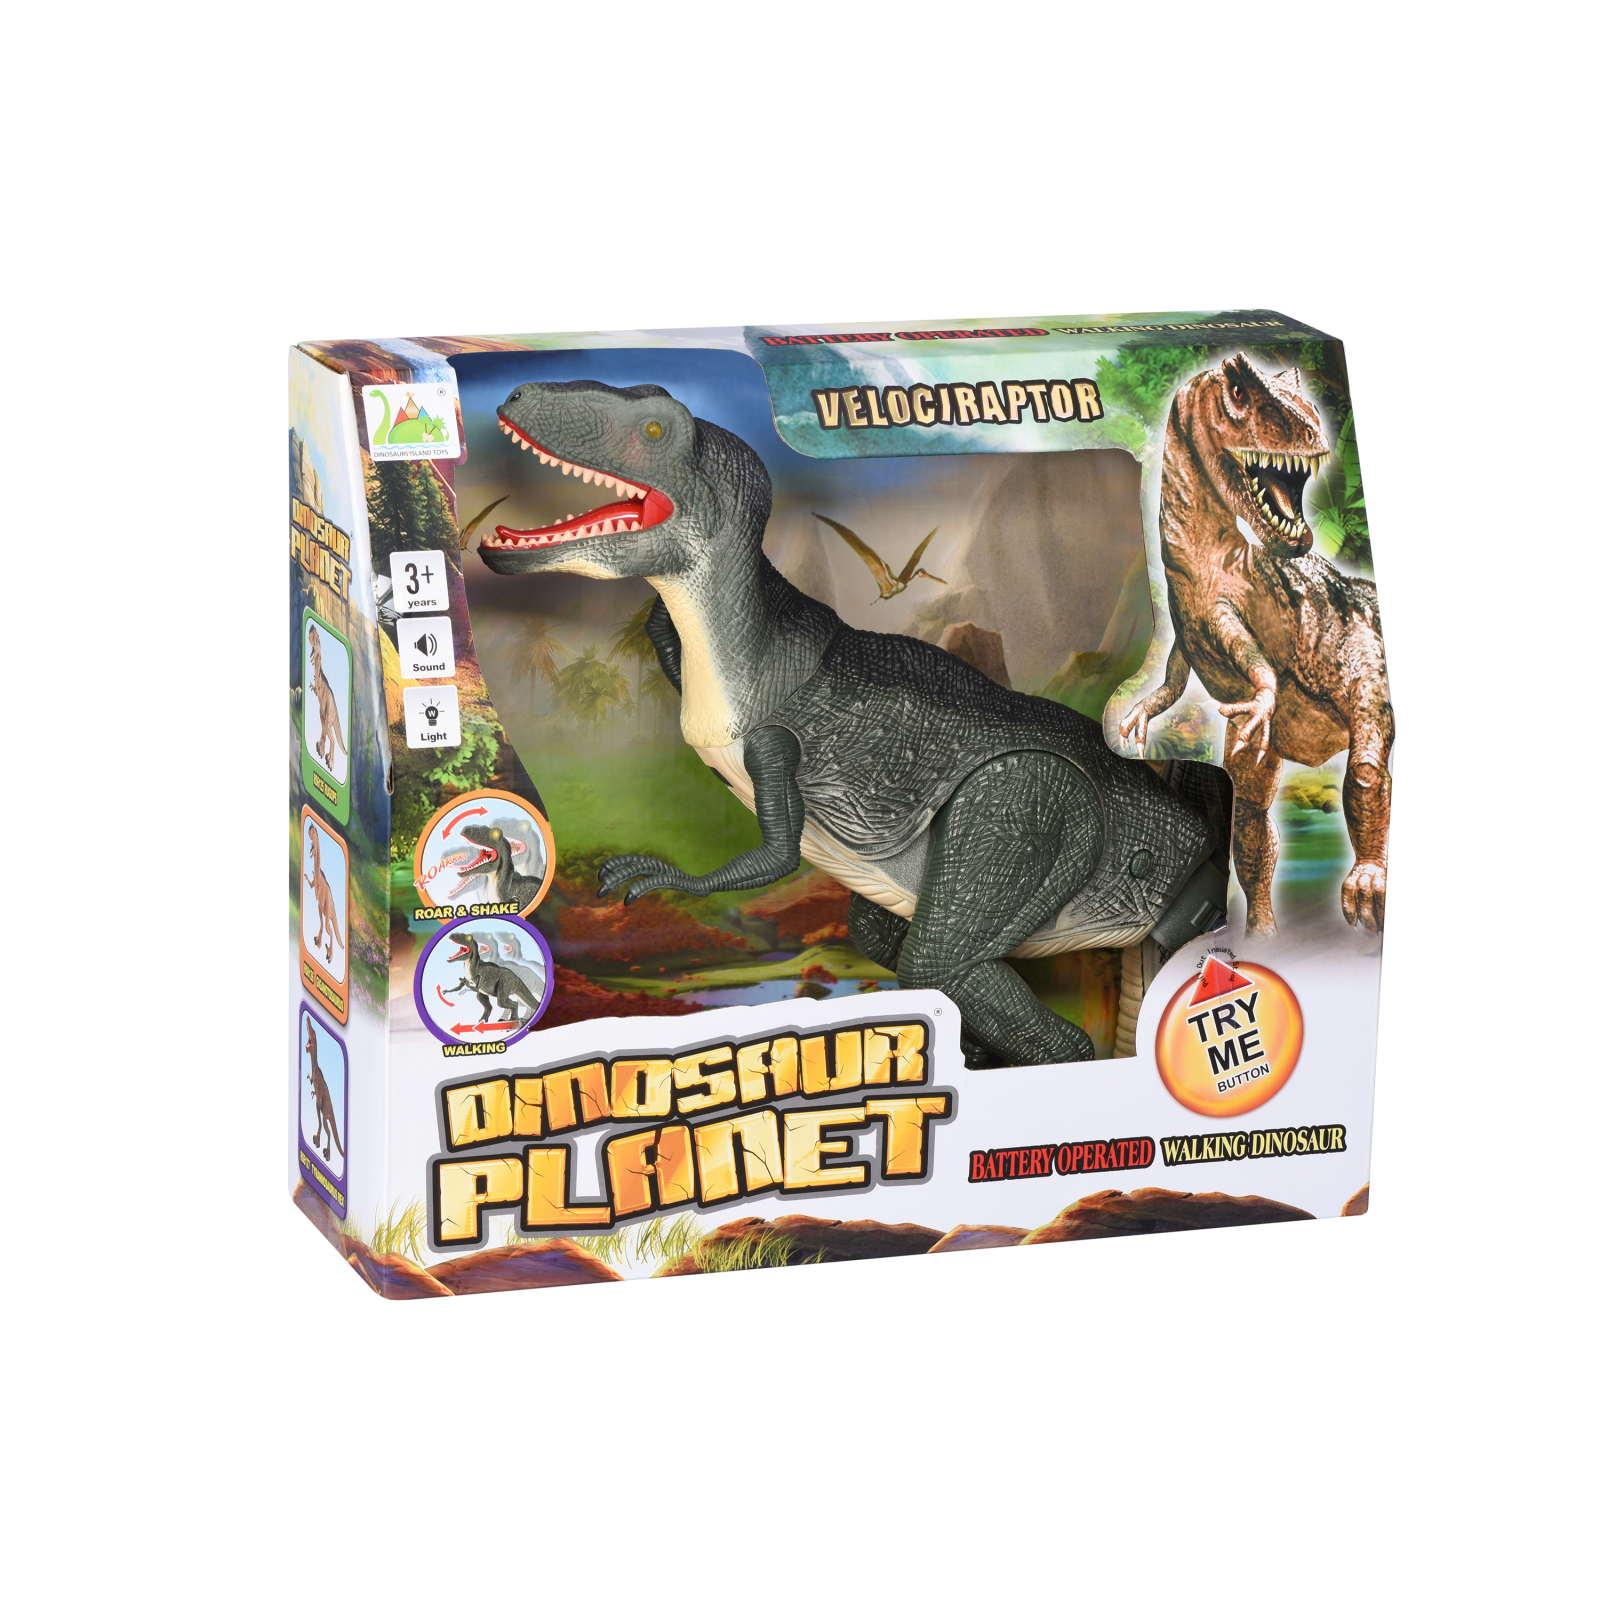 Интерактивная игрушка Same Toy Динозавр Dinosaur Planet зеленый со светом и звуком (RS6128Ut) изображение 10